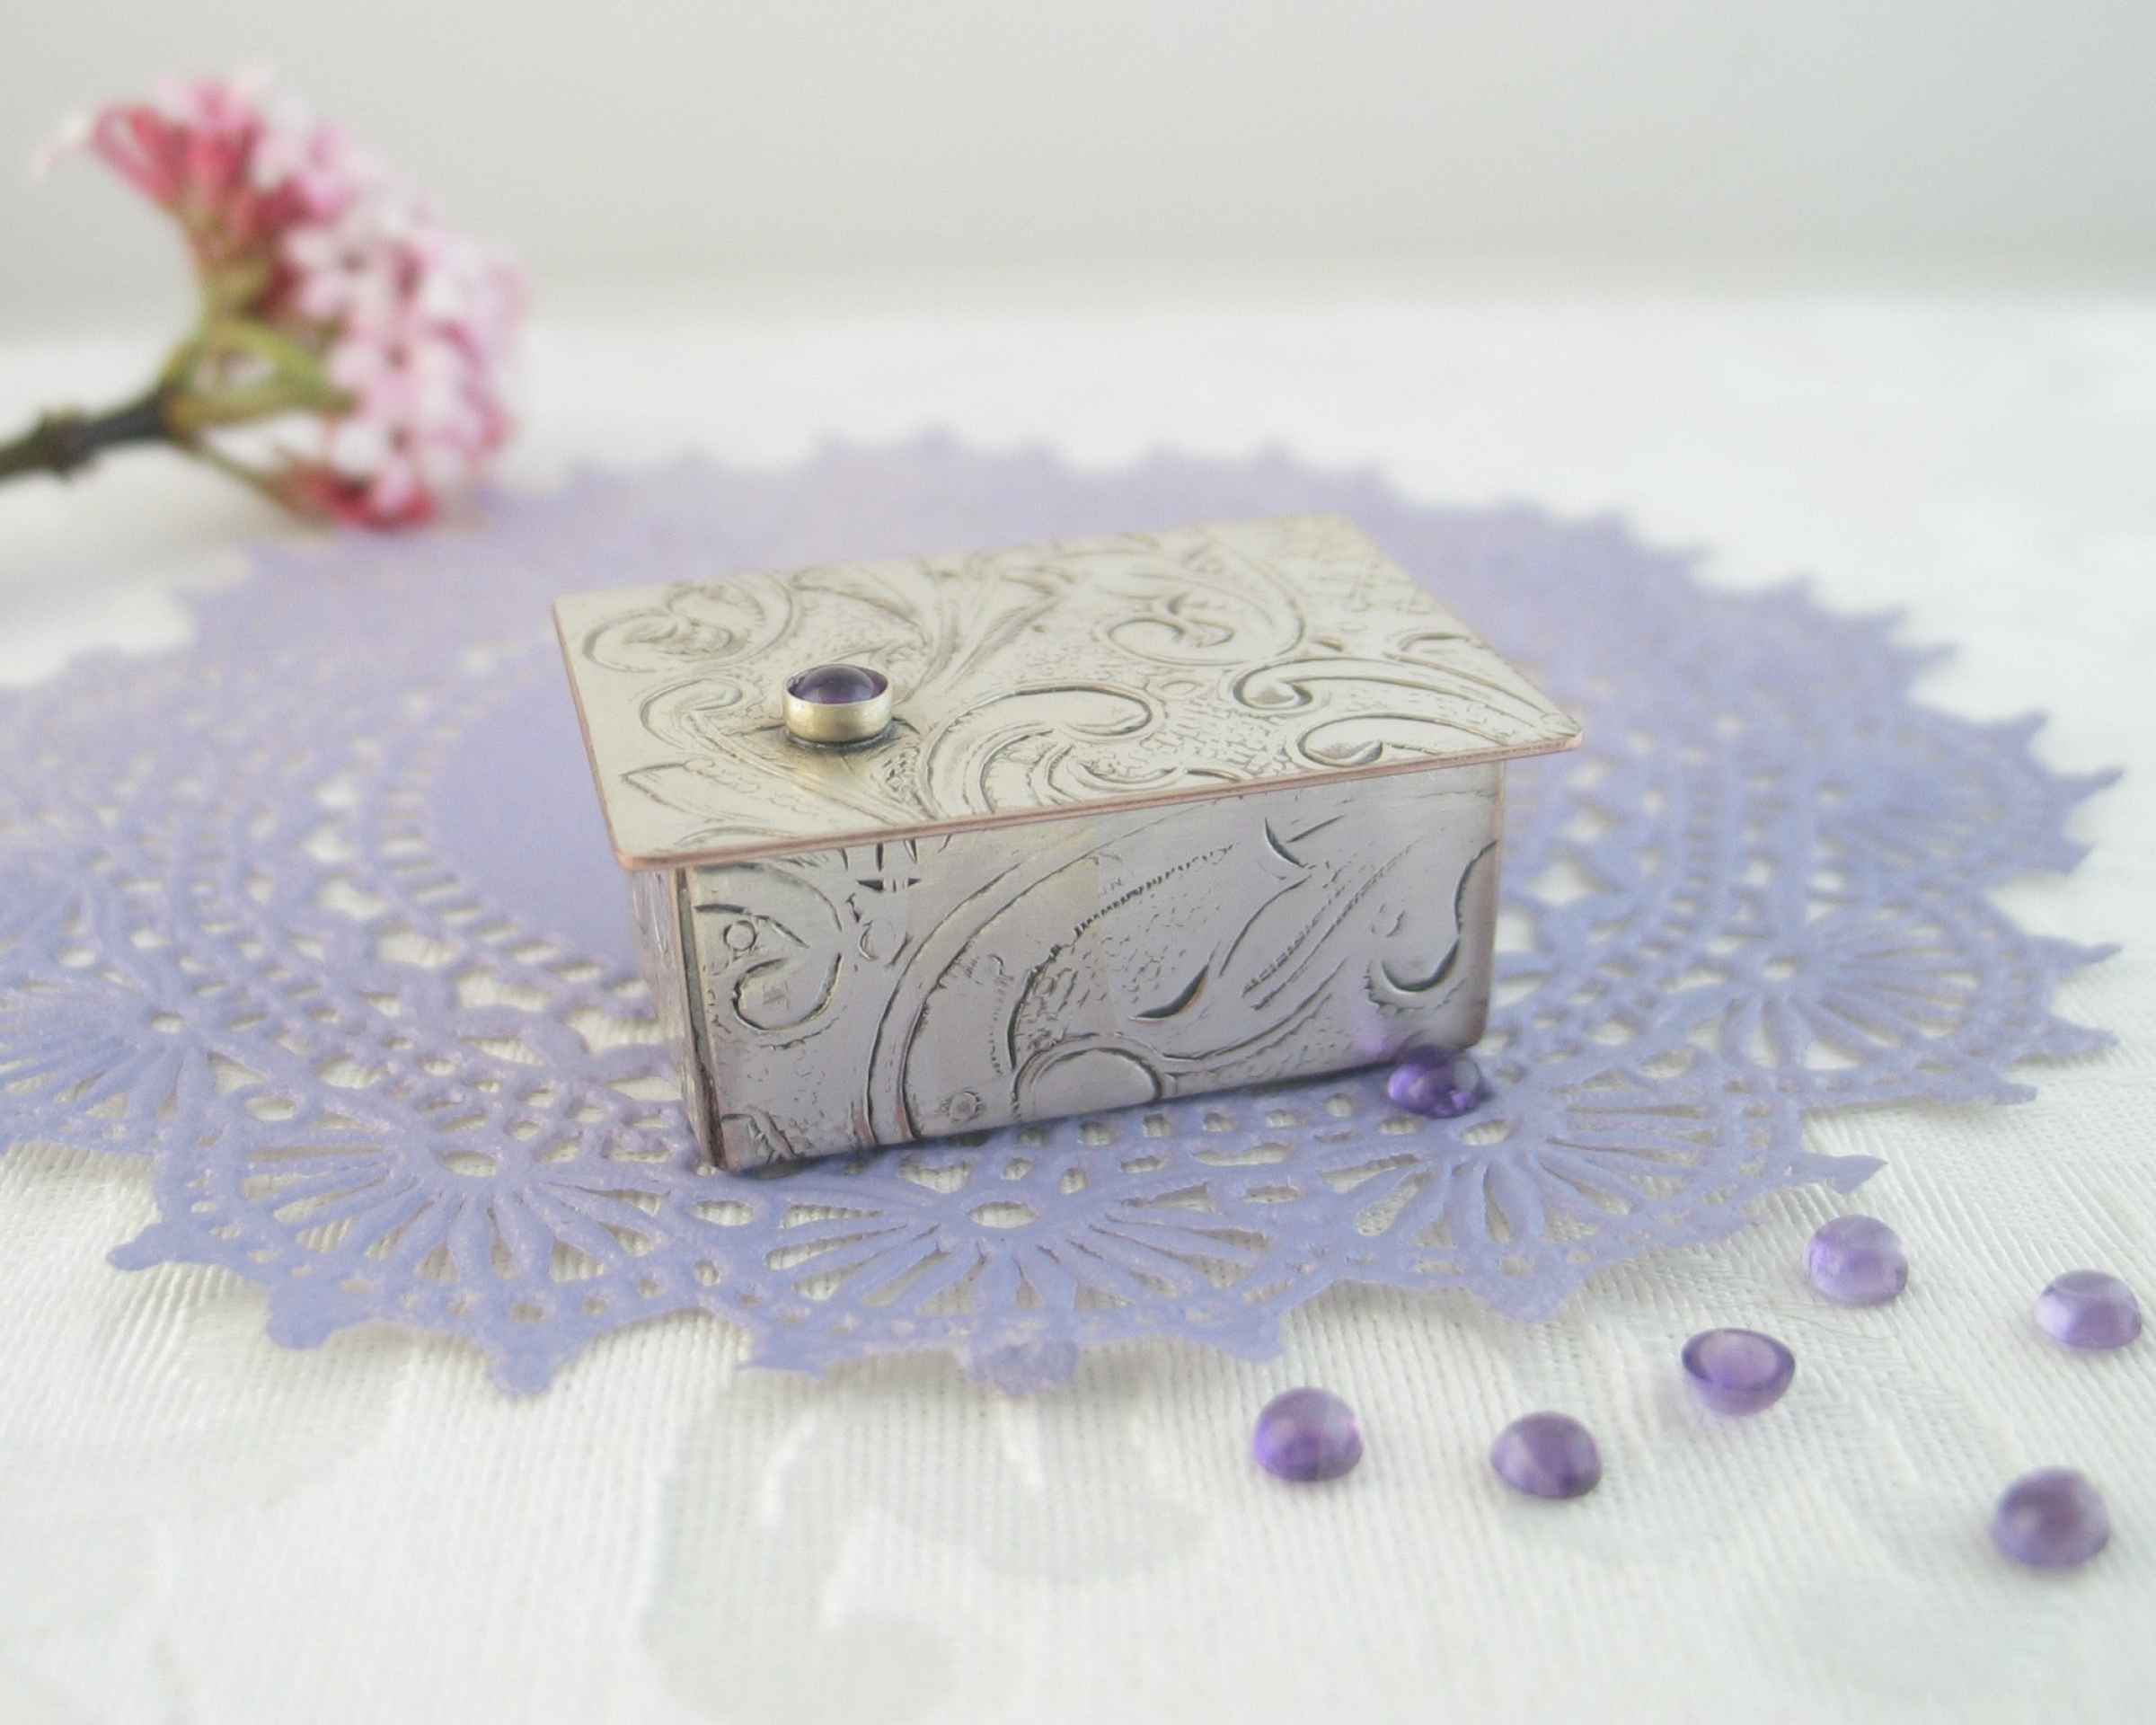 Miniature Silver Trinket Box with february birthstone amethyst gemstone